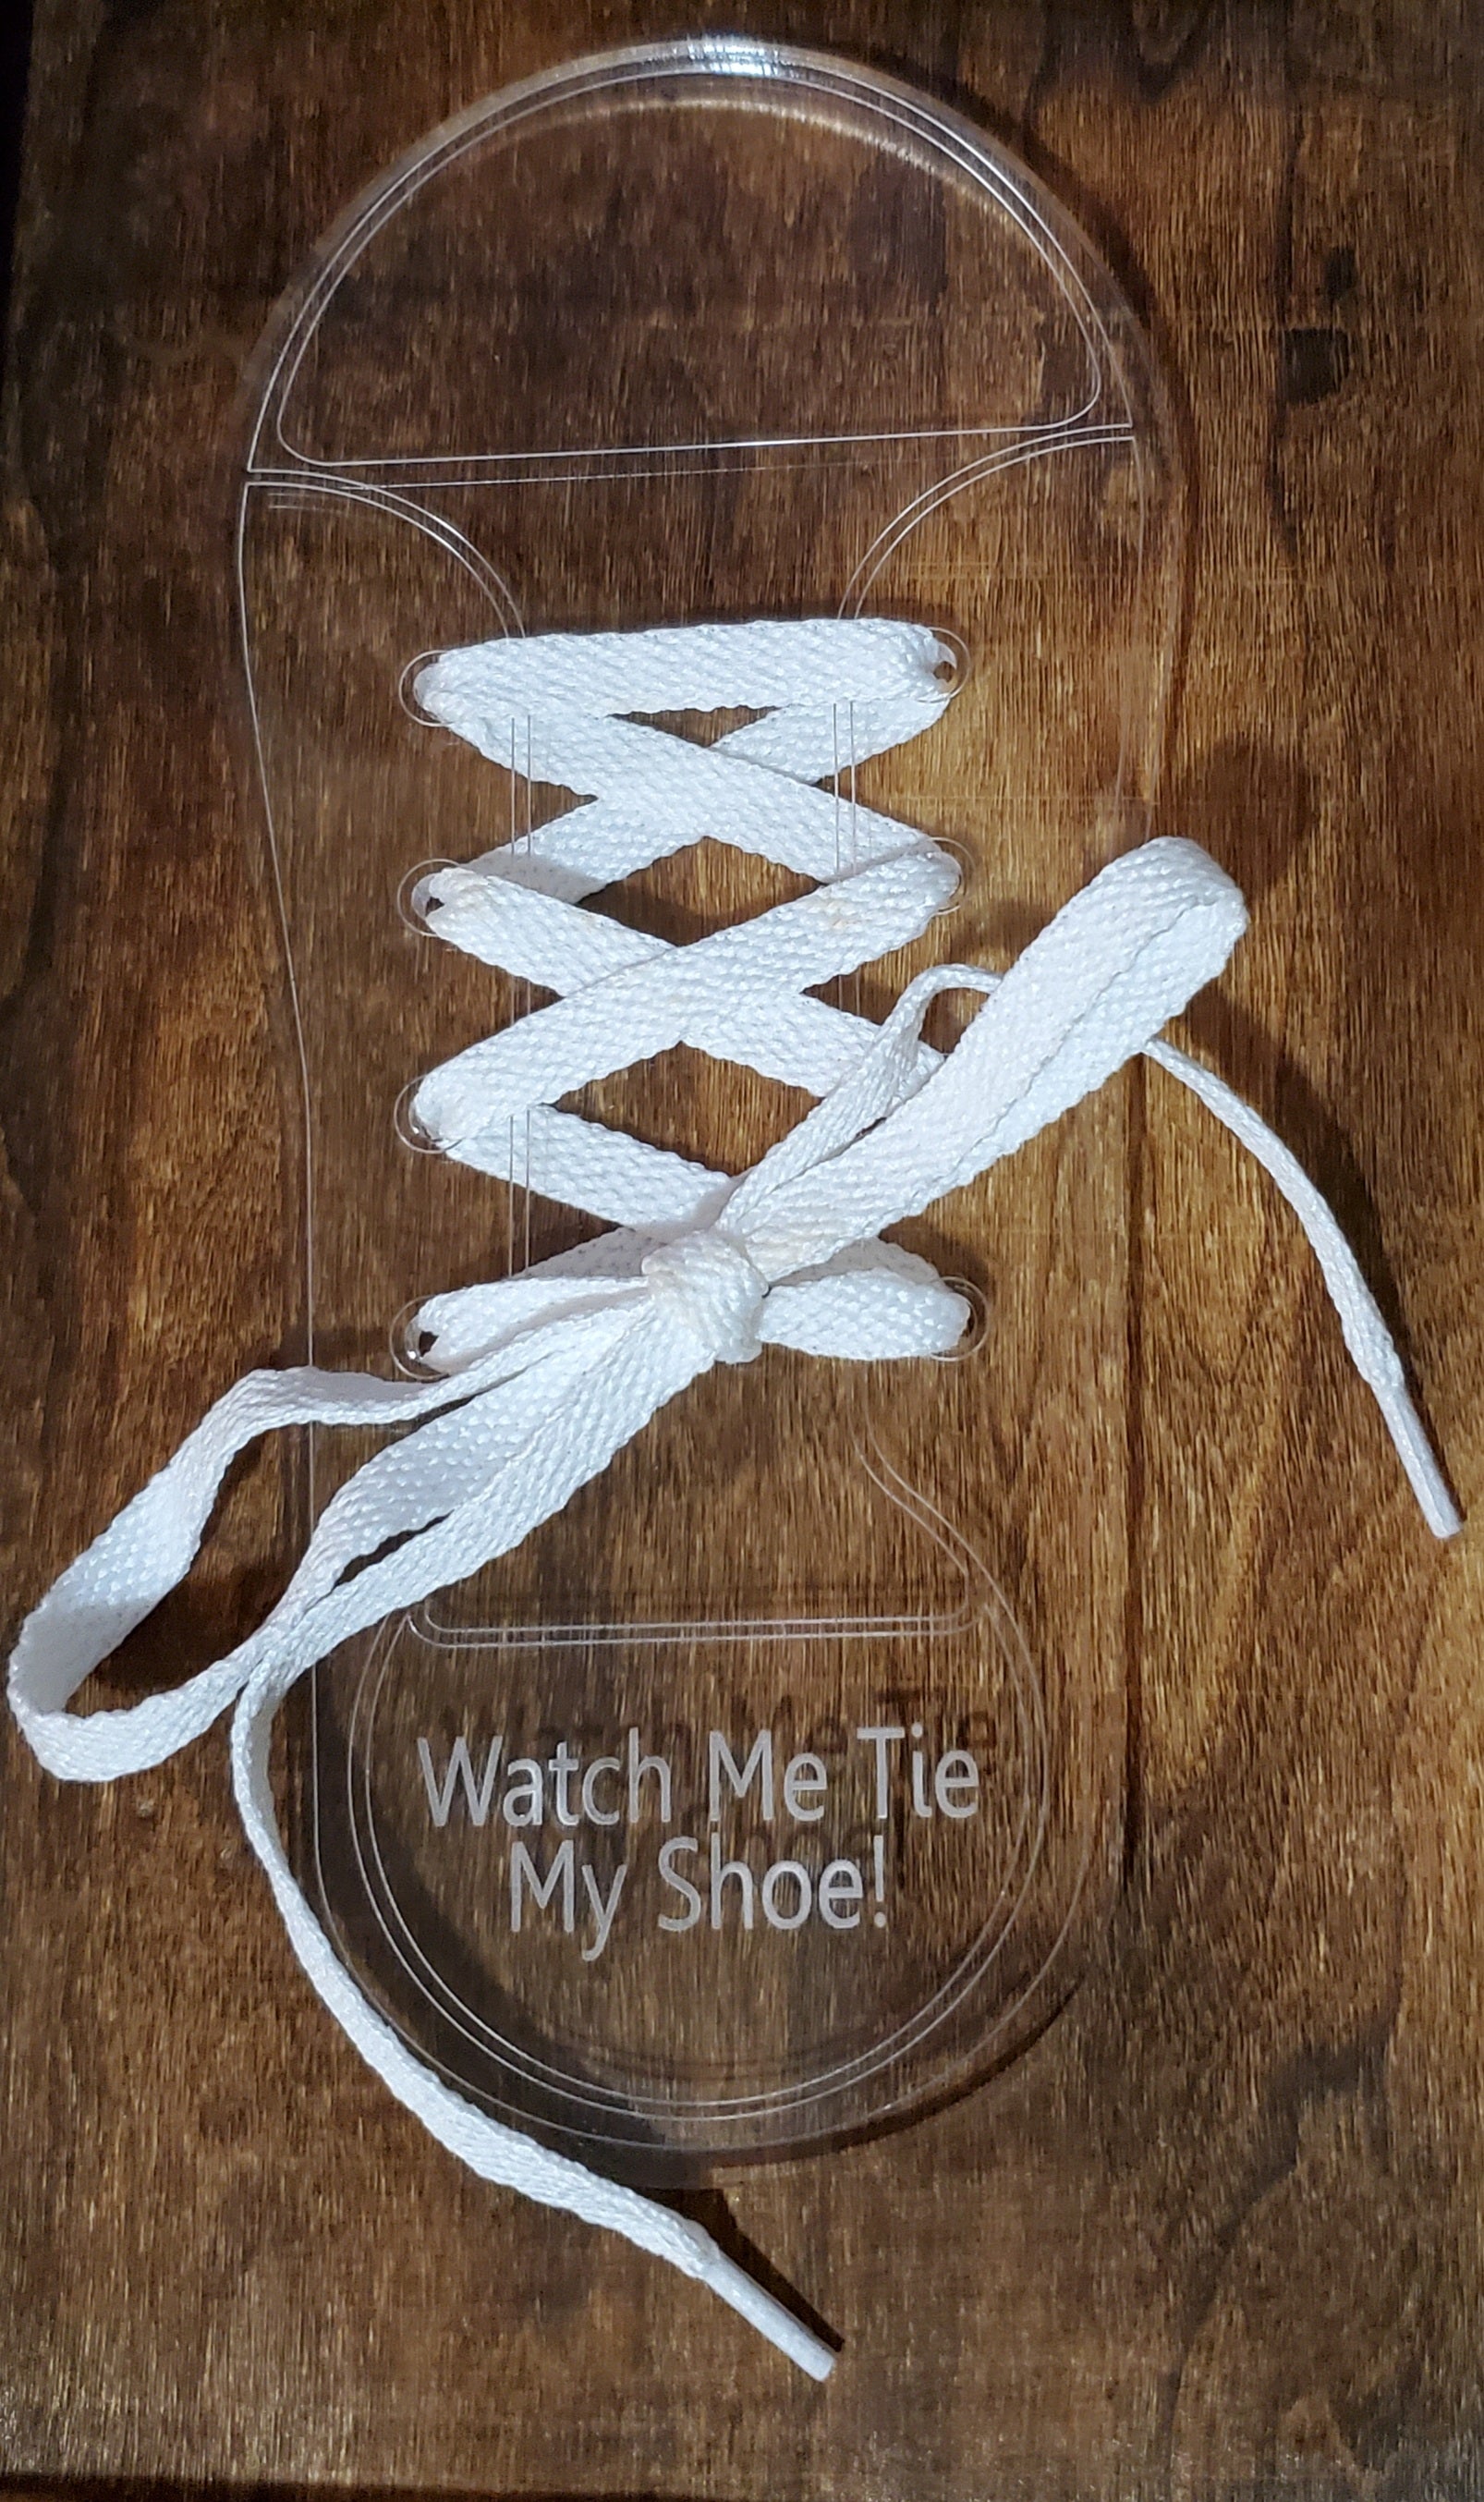 Watch Me Tie My Shoe